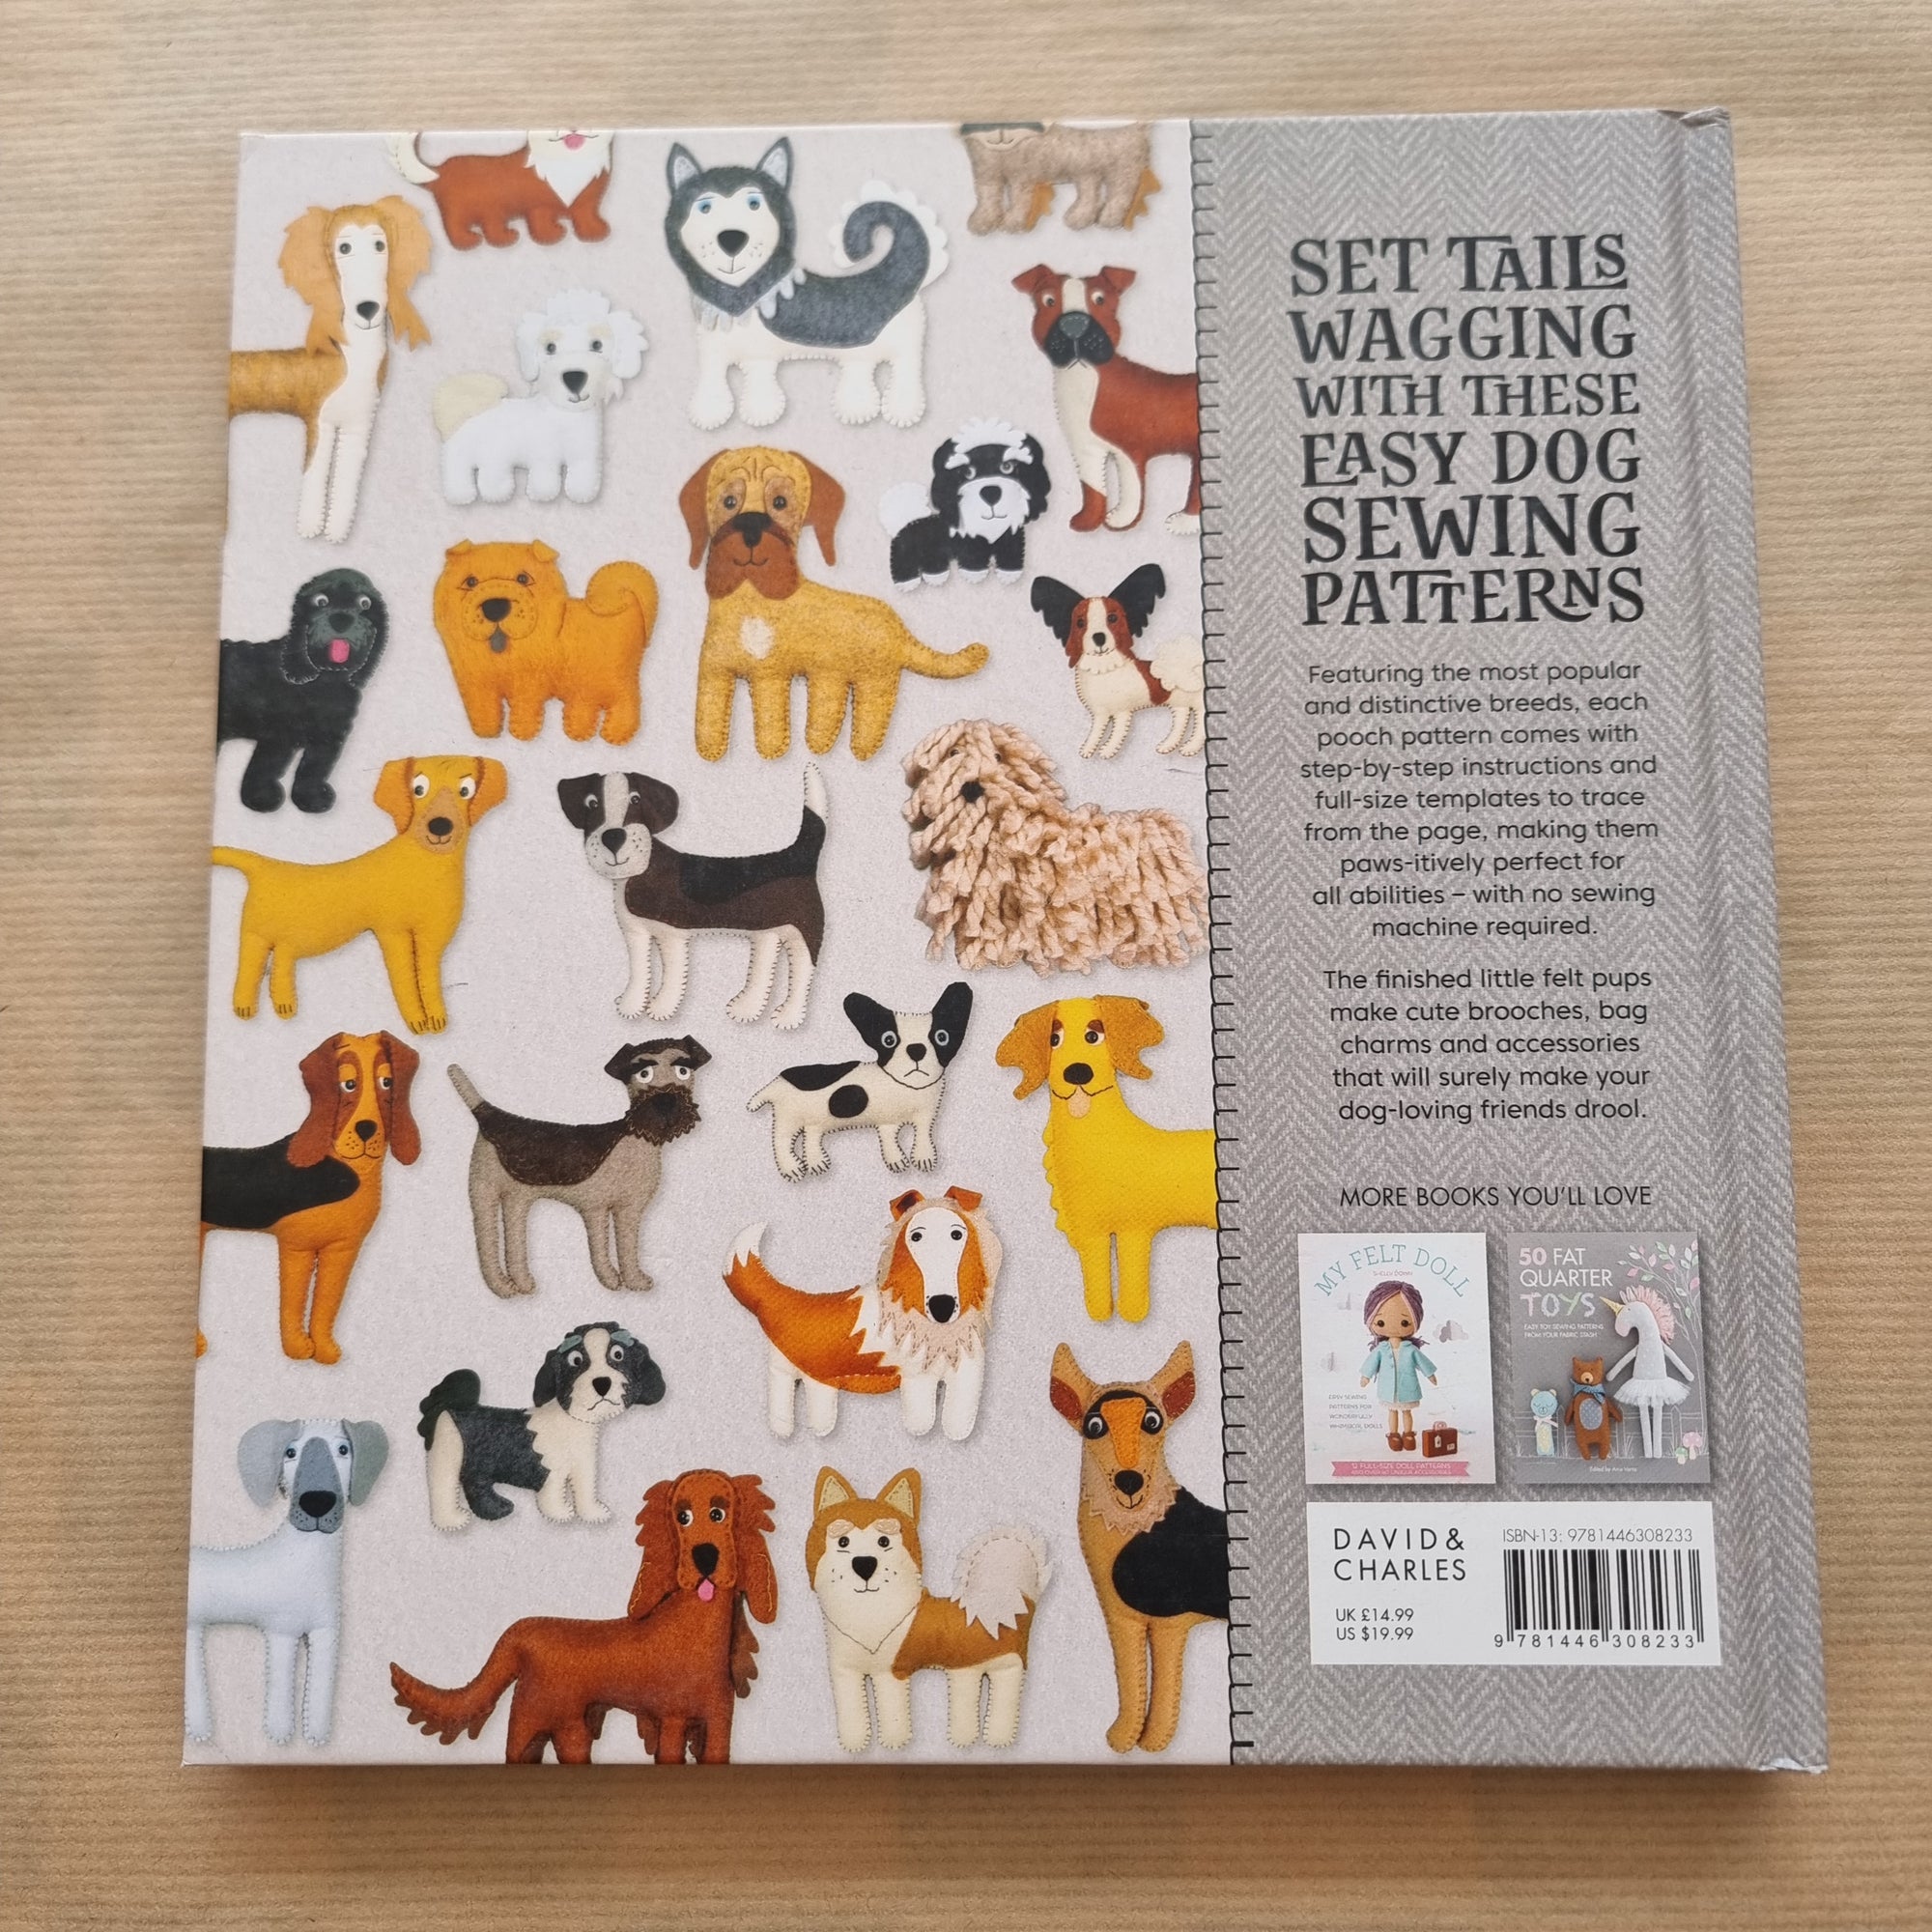 Stitch 50 Dogs Book